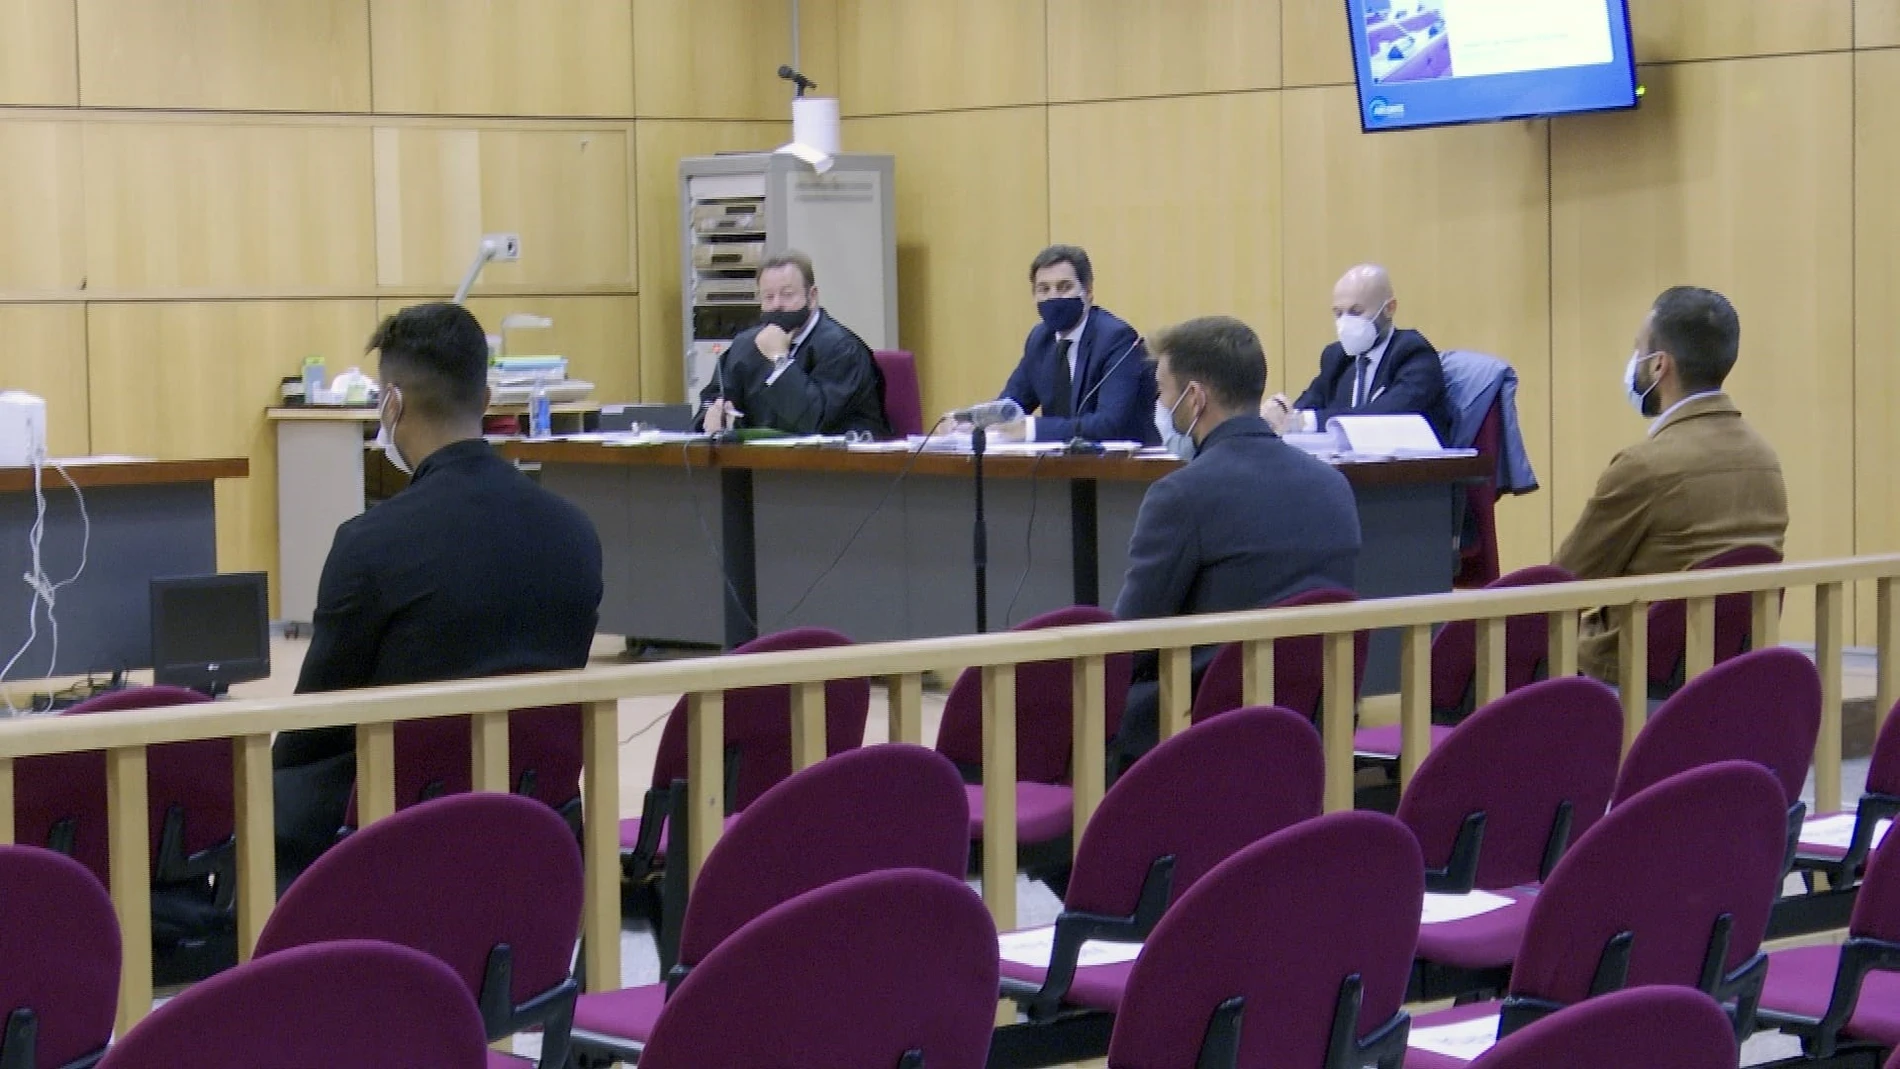 Sergi Enrich, Antonio Luna y Eddy Silvestre, durante el juicio.